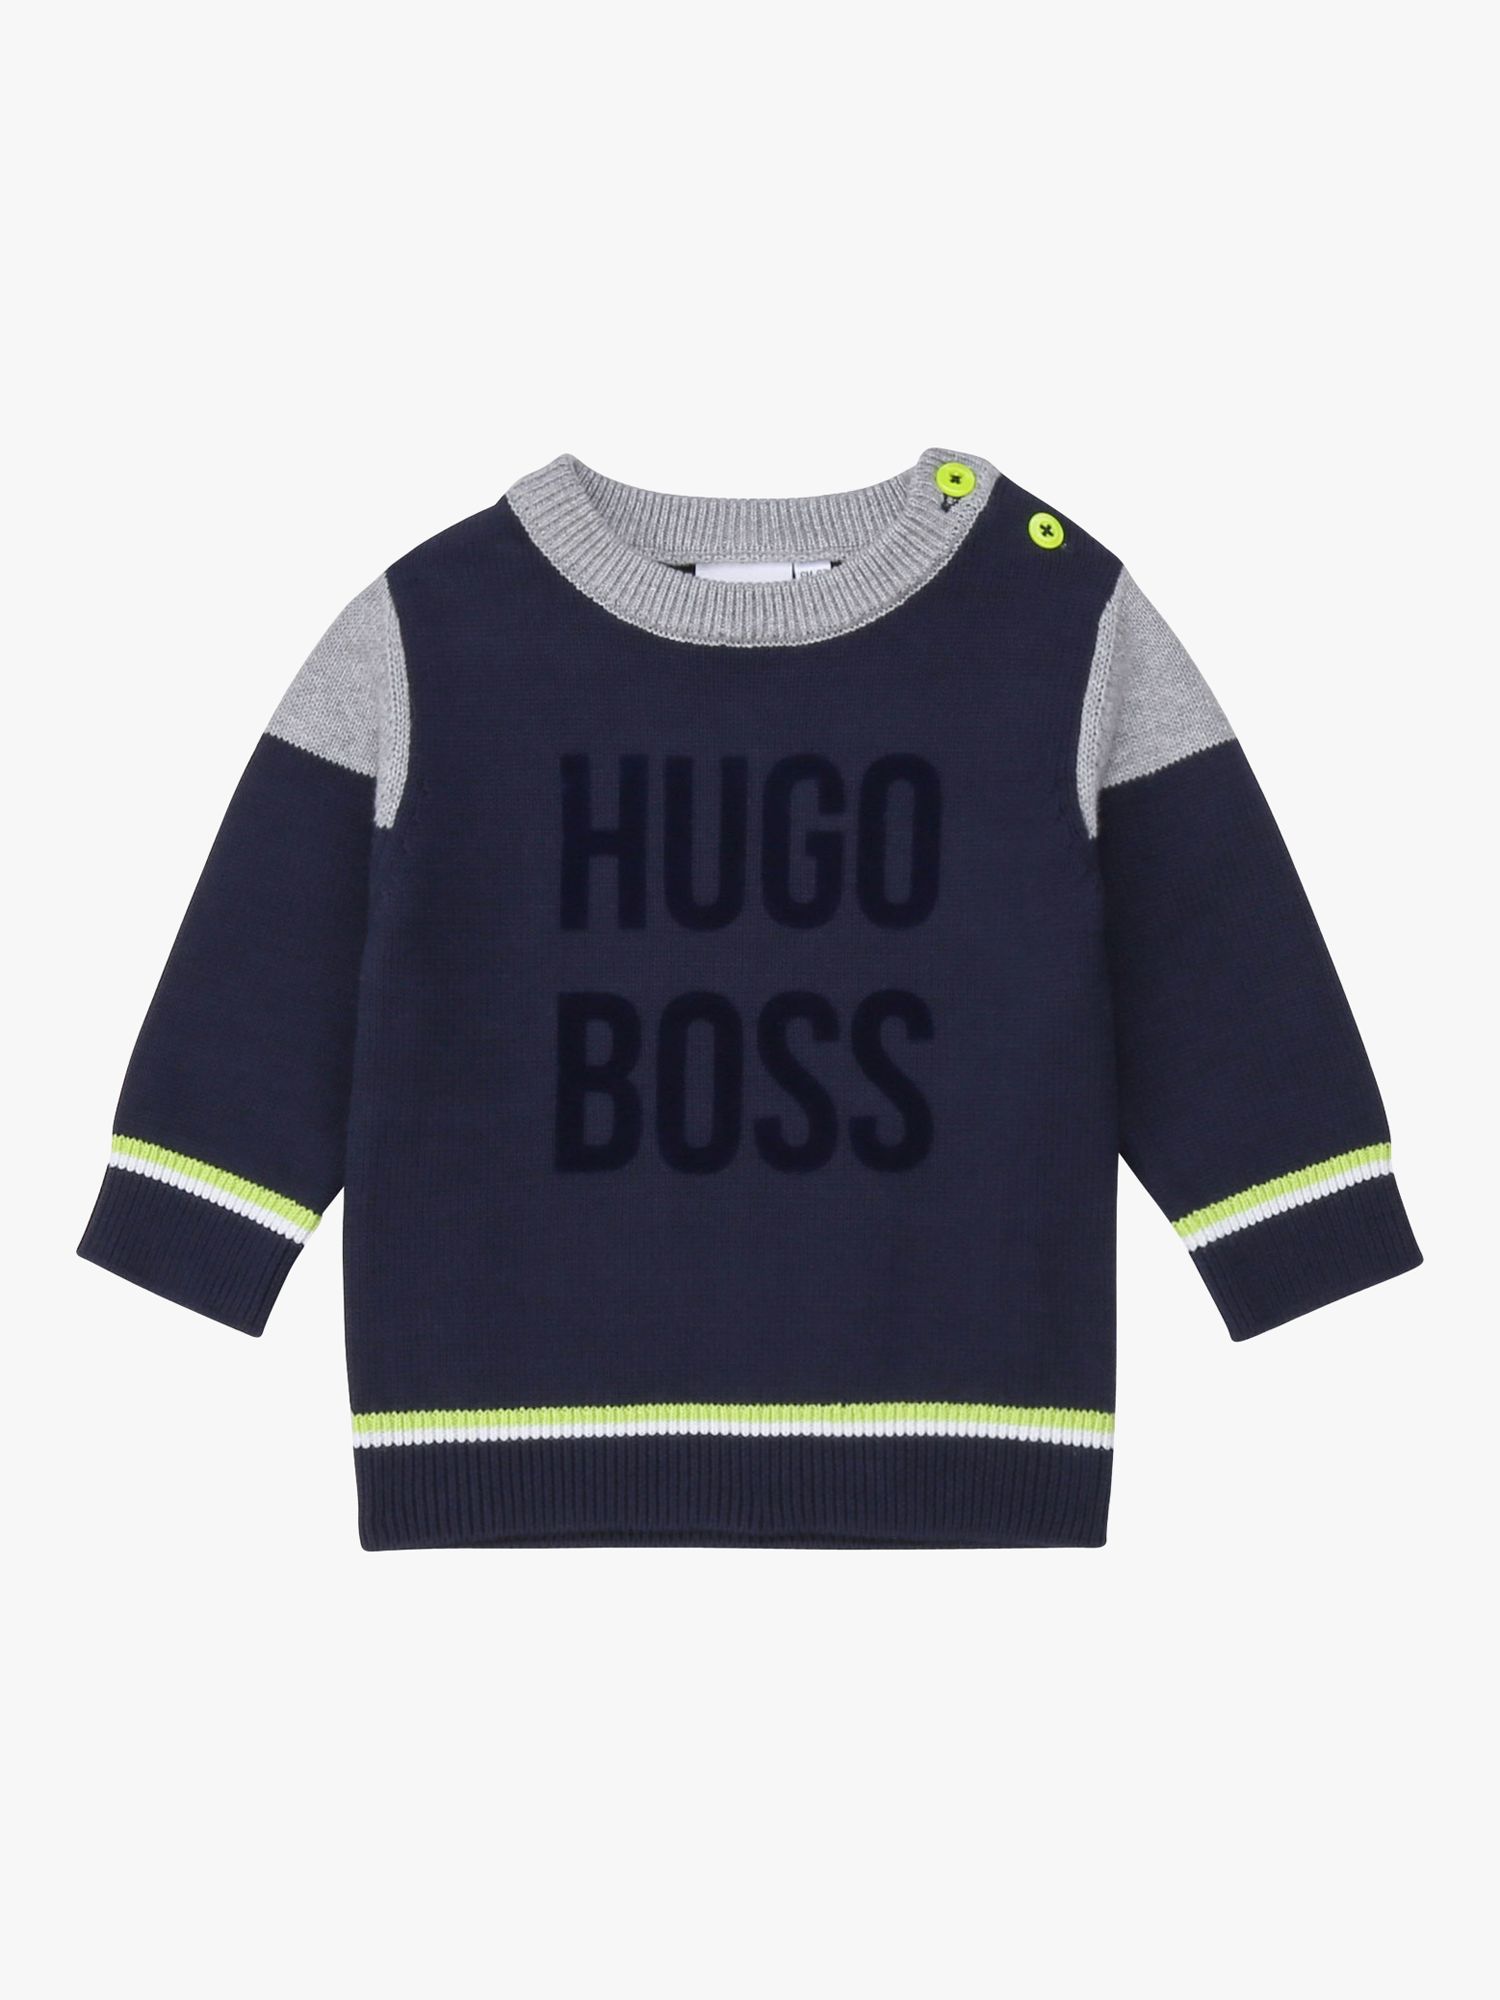 hugo boss baby jumper